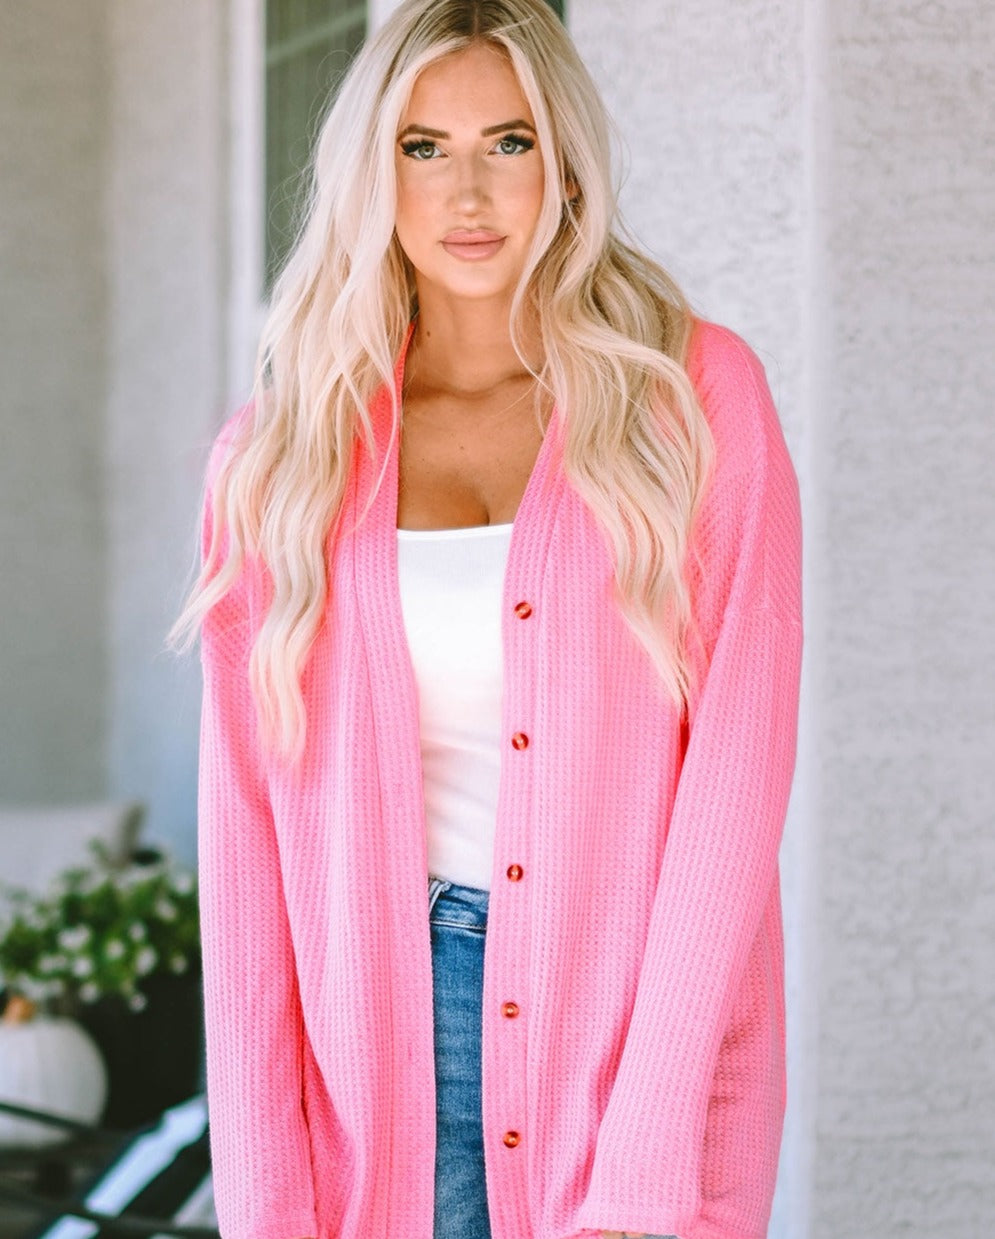 Blushing in Pink Long Sleeve Cardigan